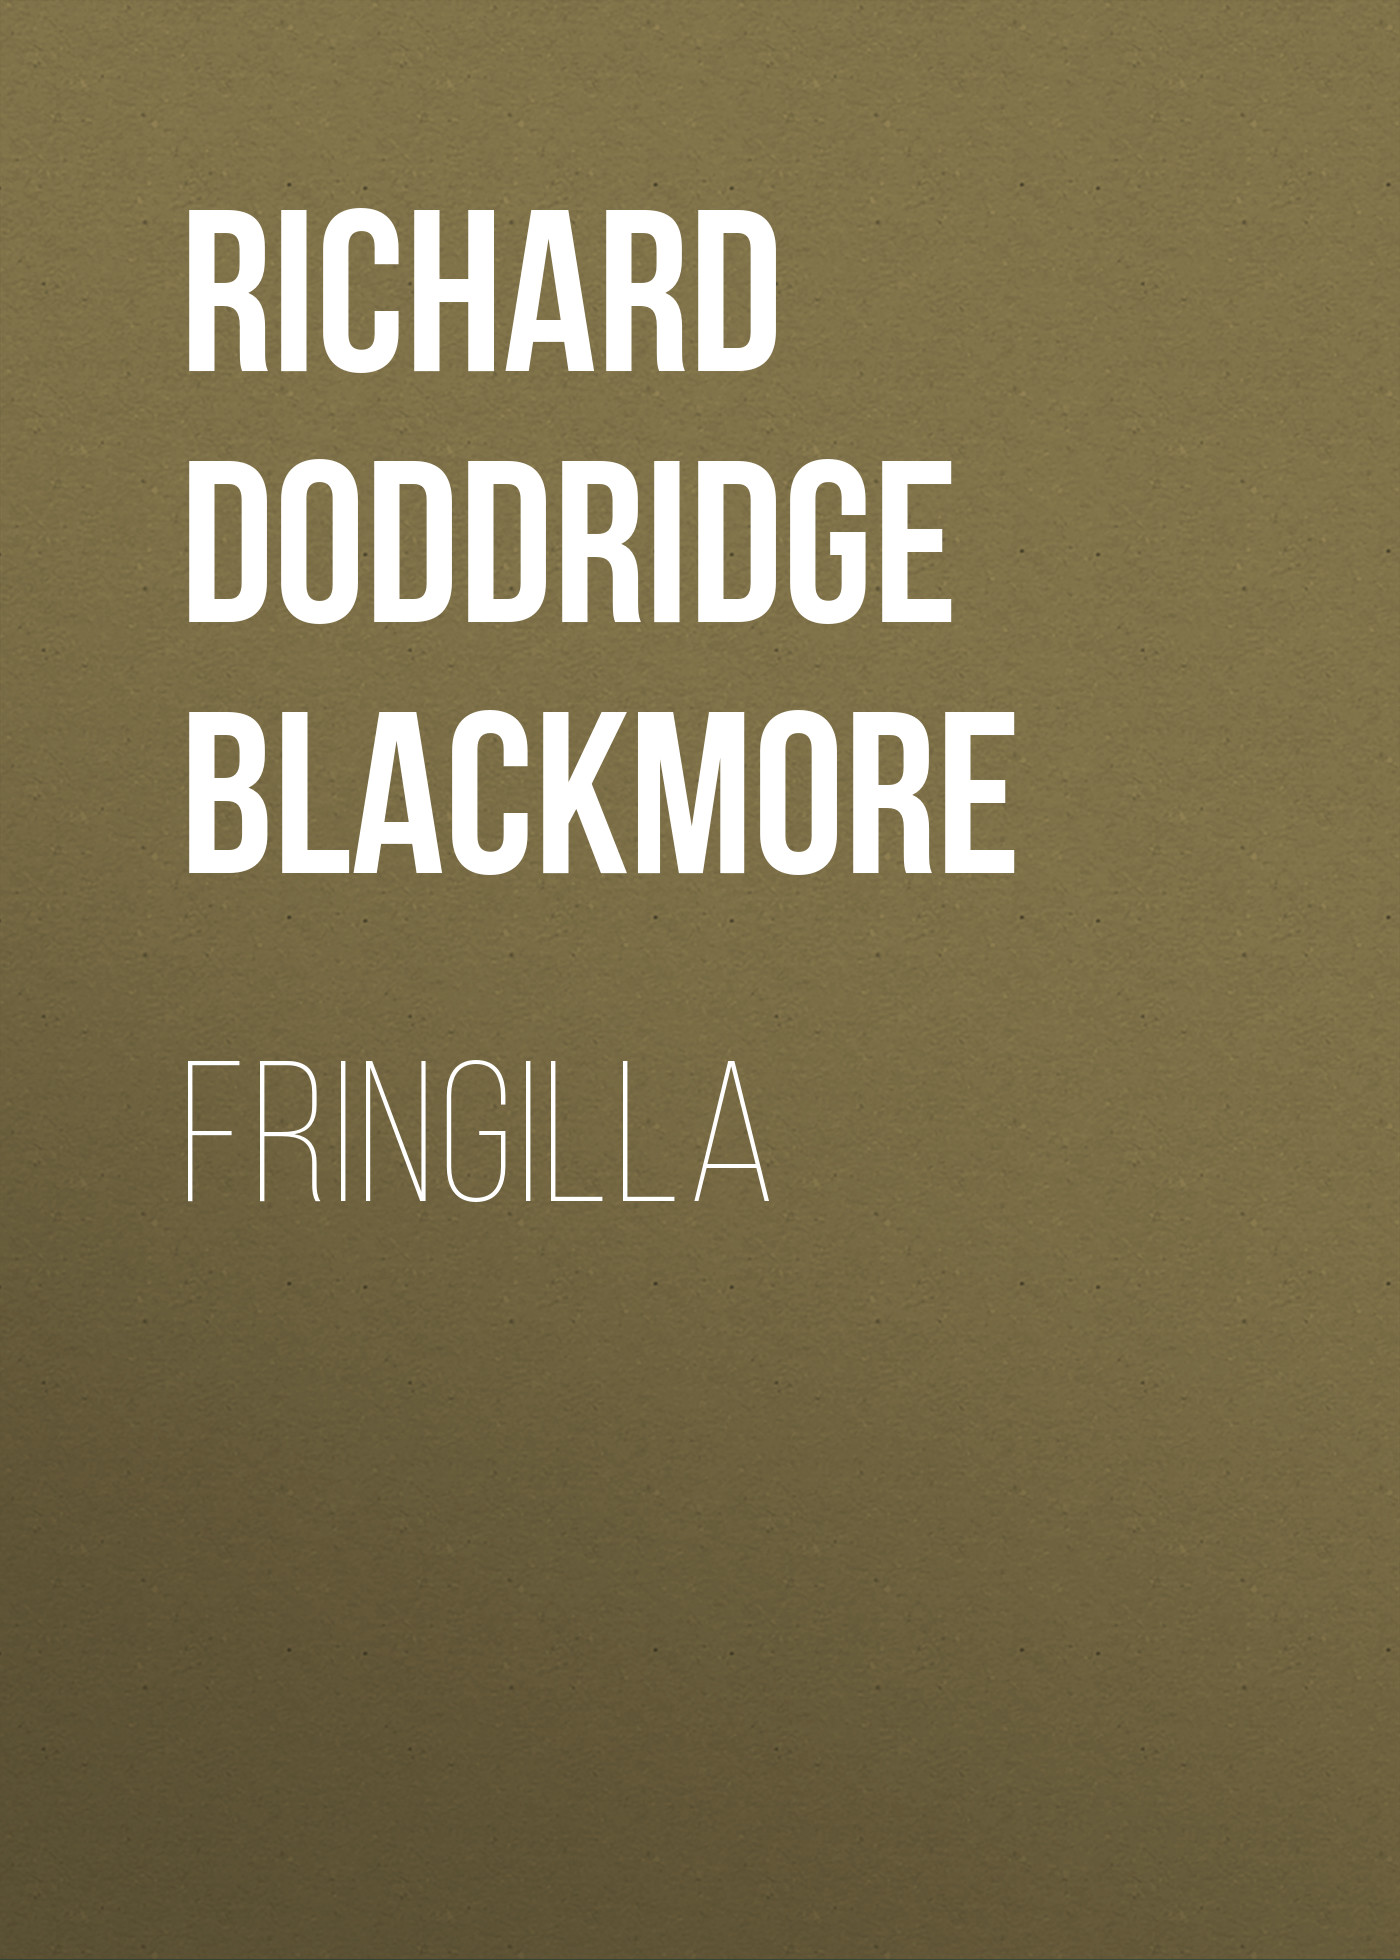 Книга Fringilla из серии , созданная Richard Doddridge Blackmore, может относится к жанру Зарубежная классика, Литература 19 века, Зарубежная старинная литература. Стоимость электронной книги Fringilla с идентификатором 36096685 составляет 0 руб.